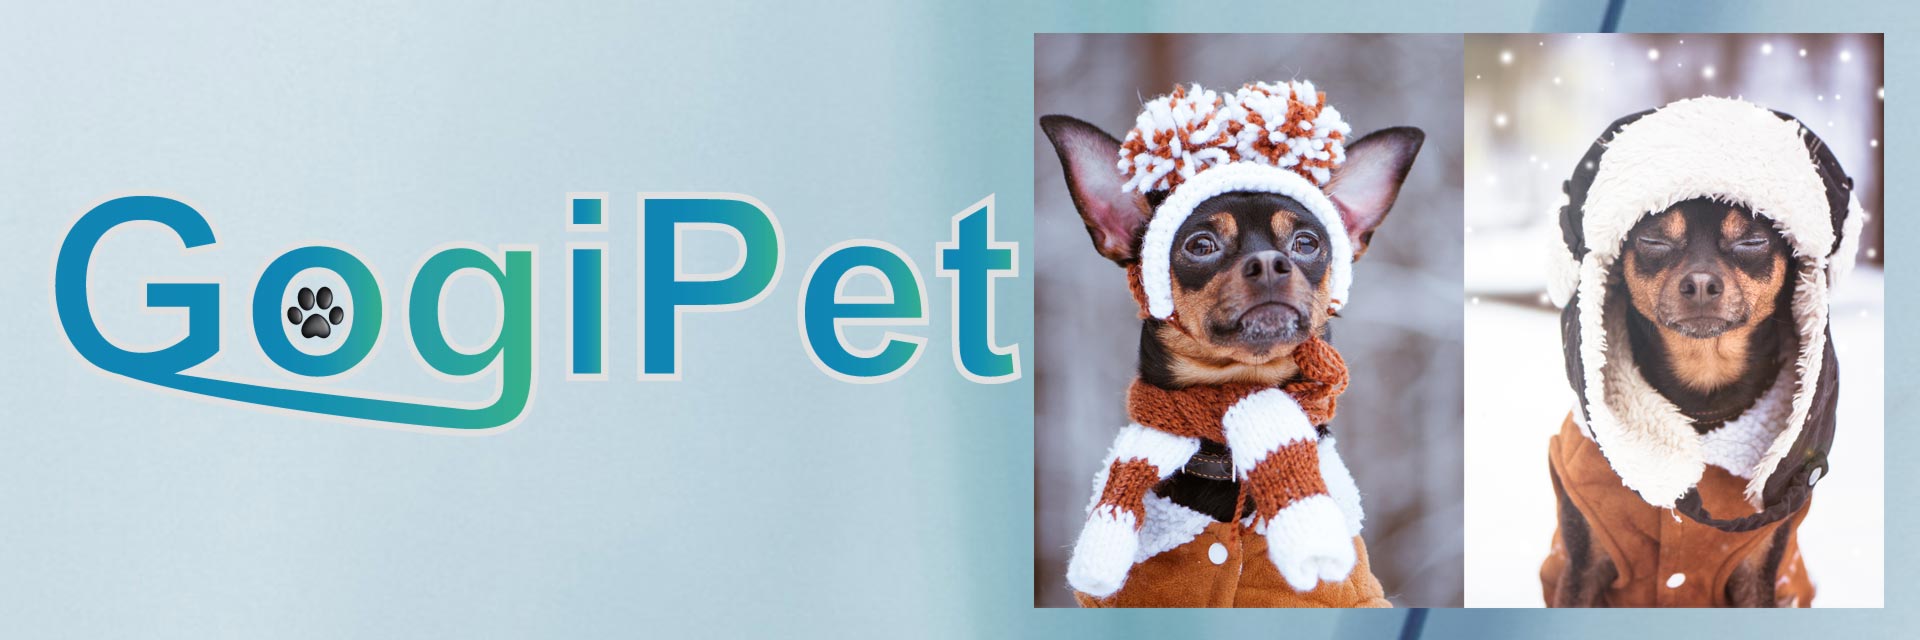 Winterbekleidung, die warme Hundebekleidung für kleine Hunde